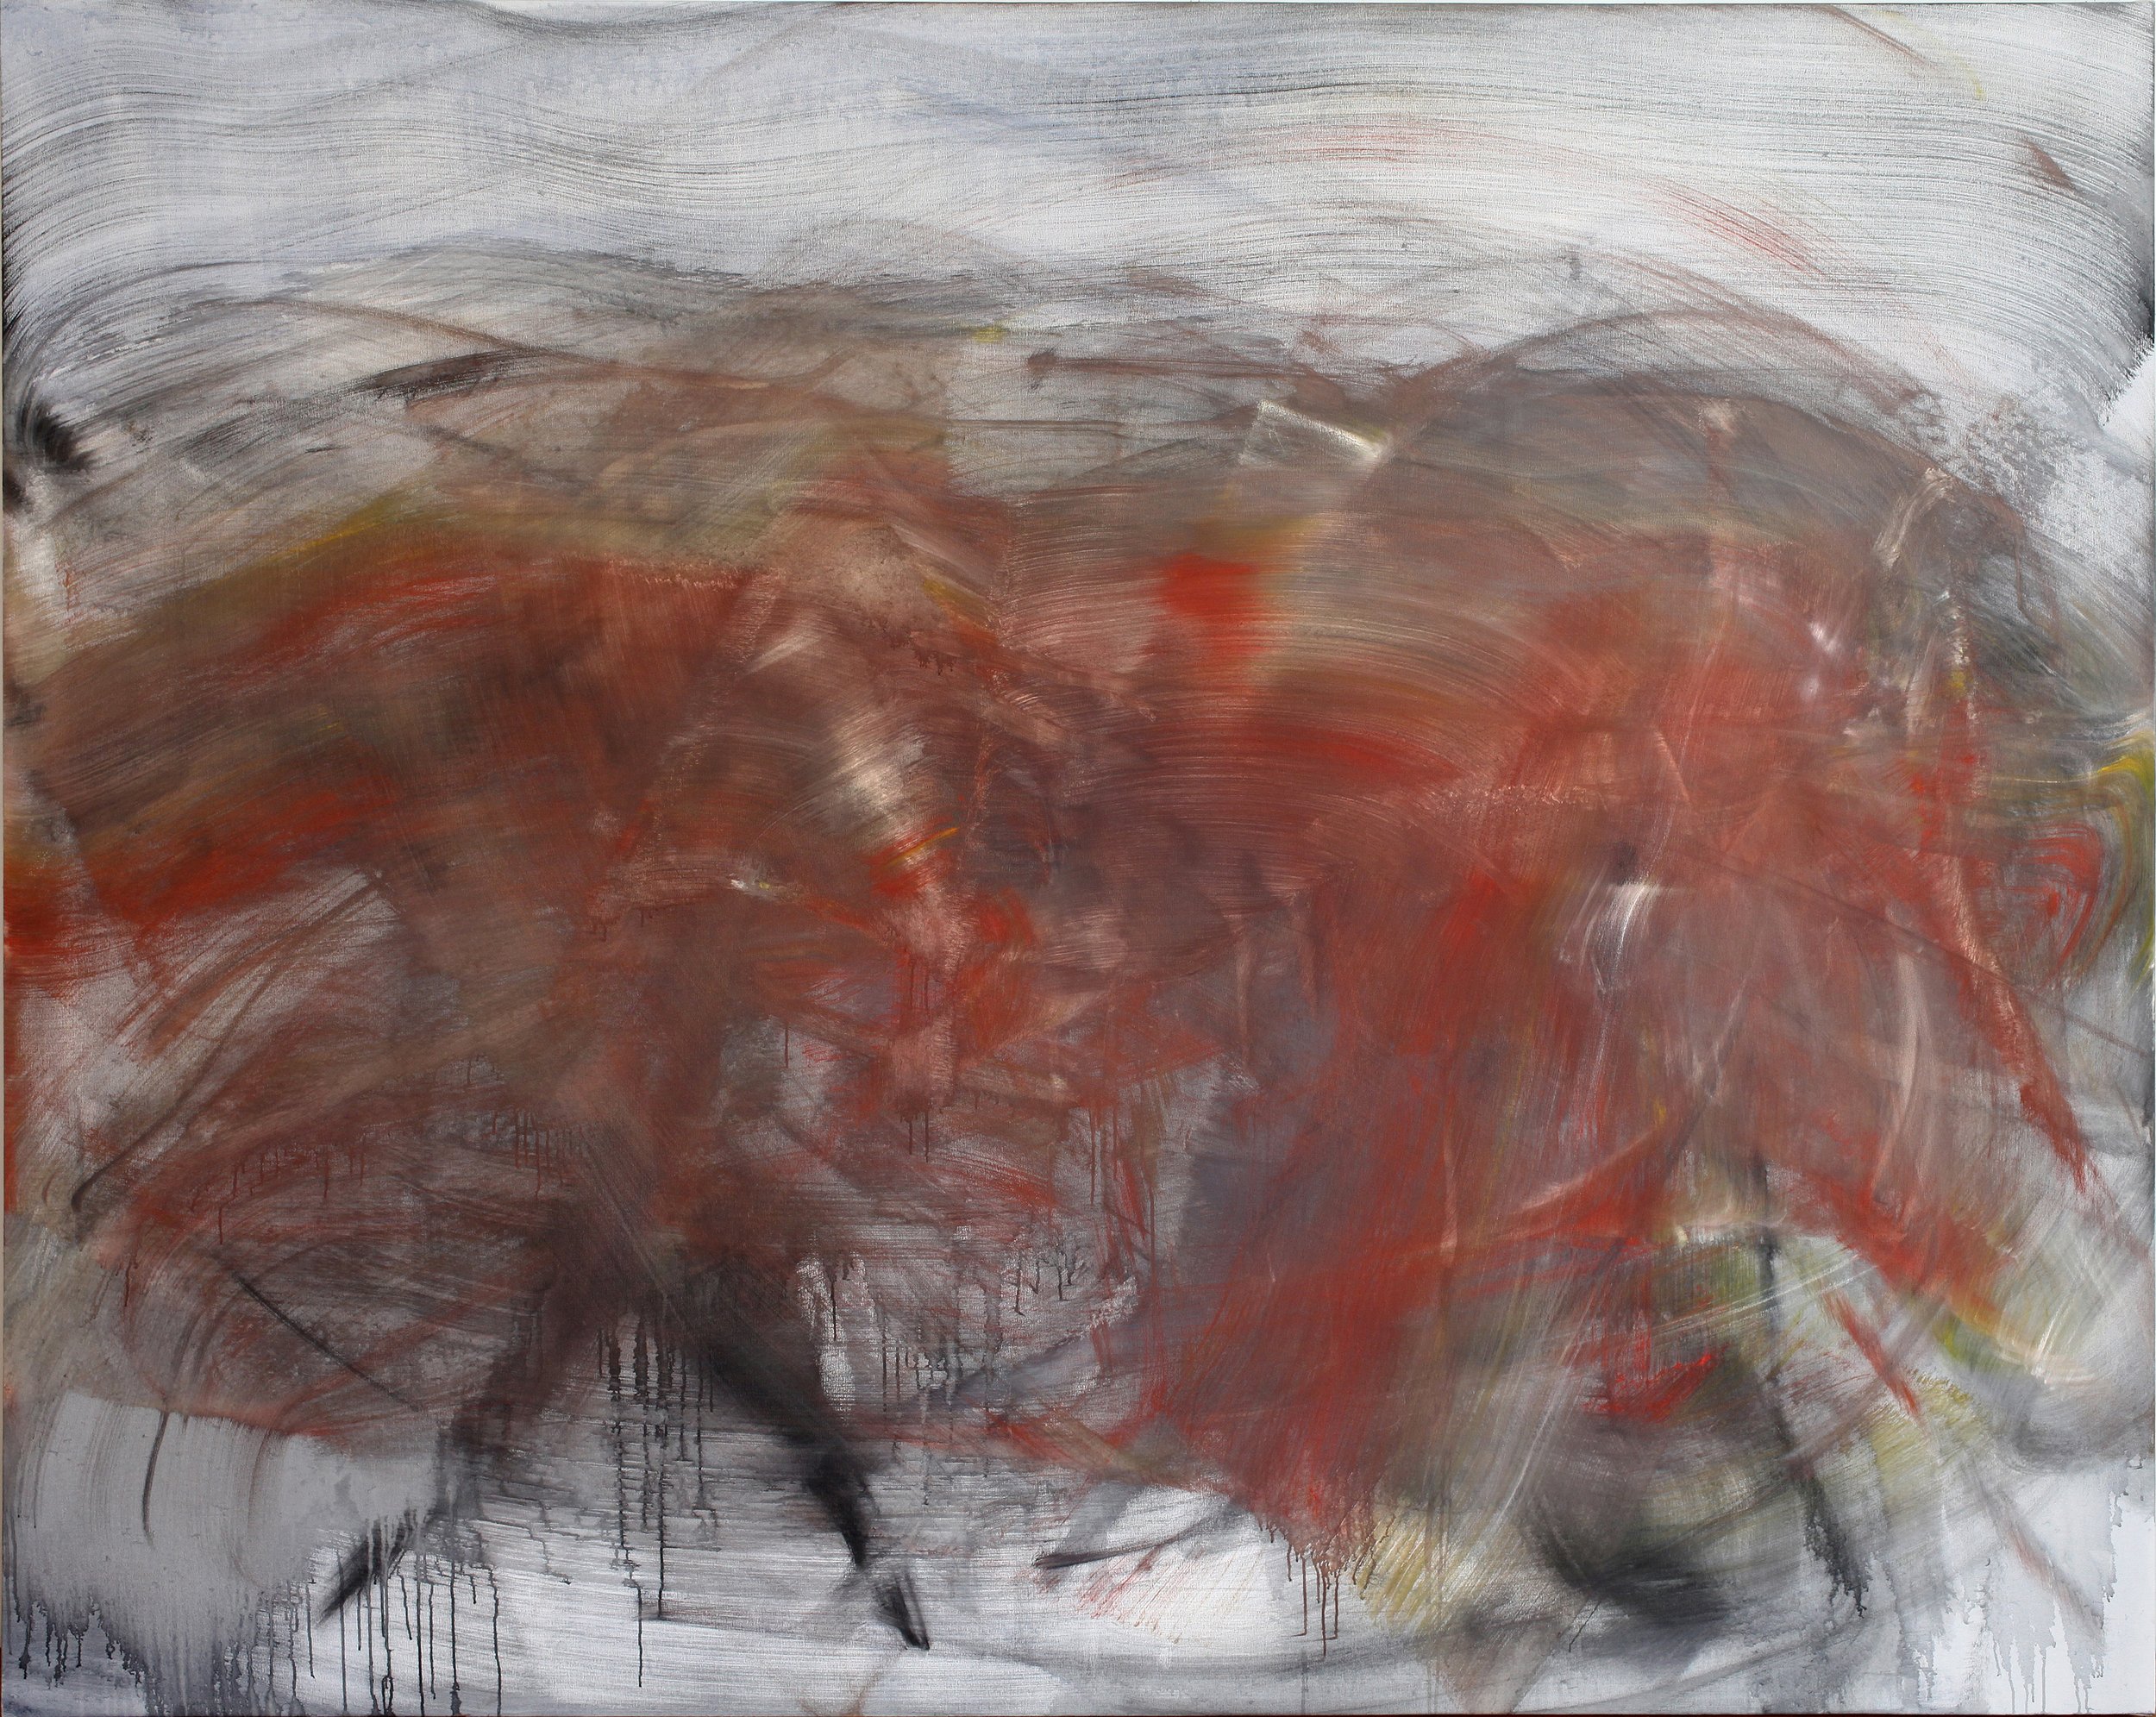 Rebecca (Stenn), 2013, oil on canvas, 88 x 110 inches